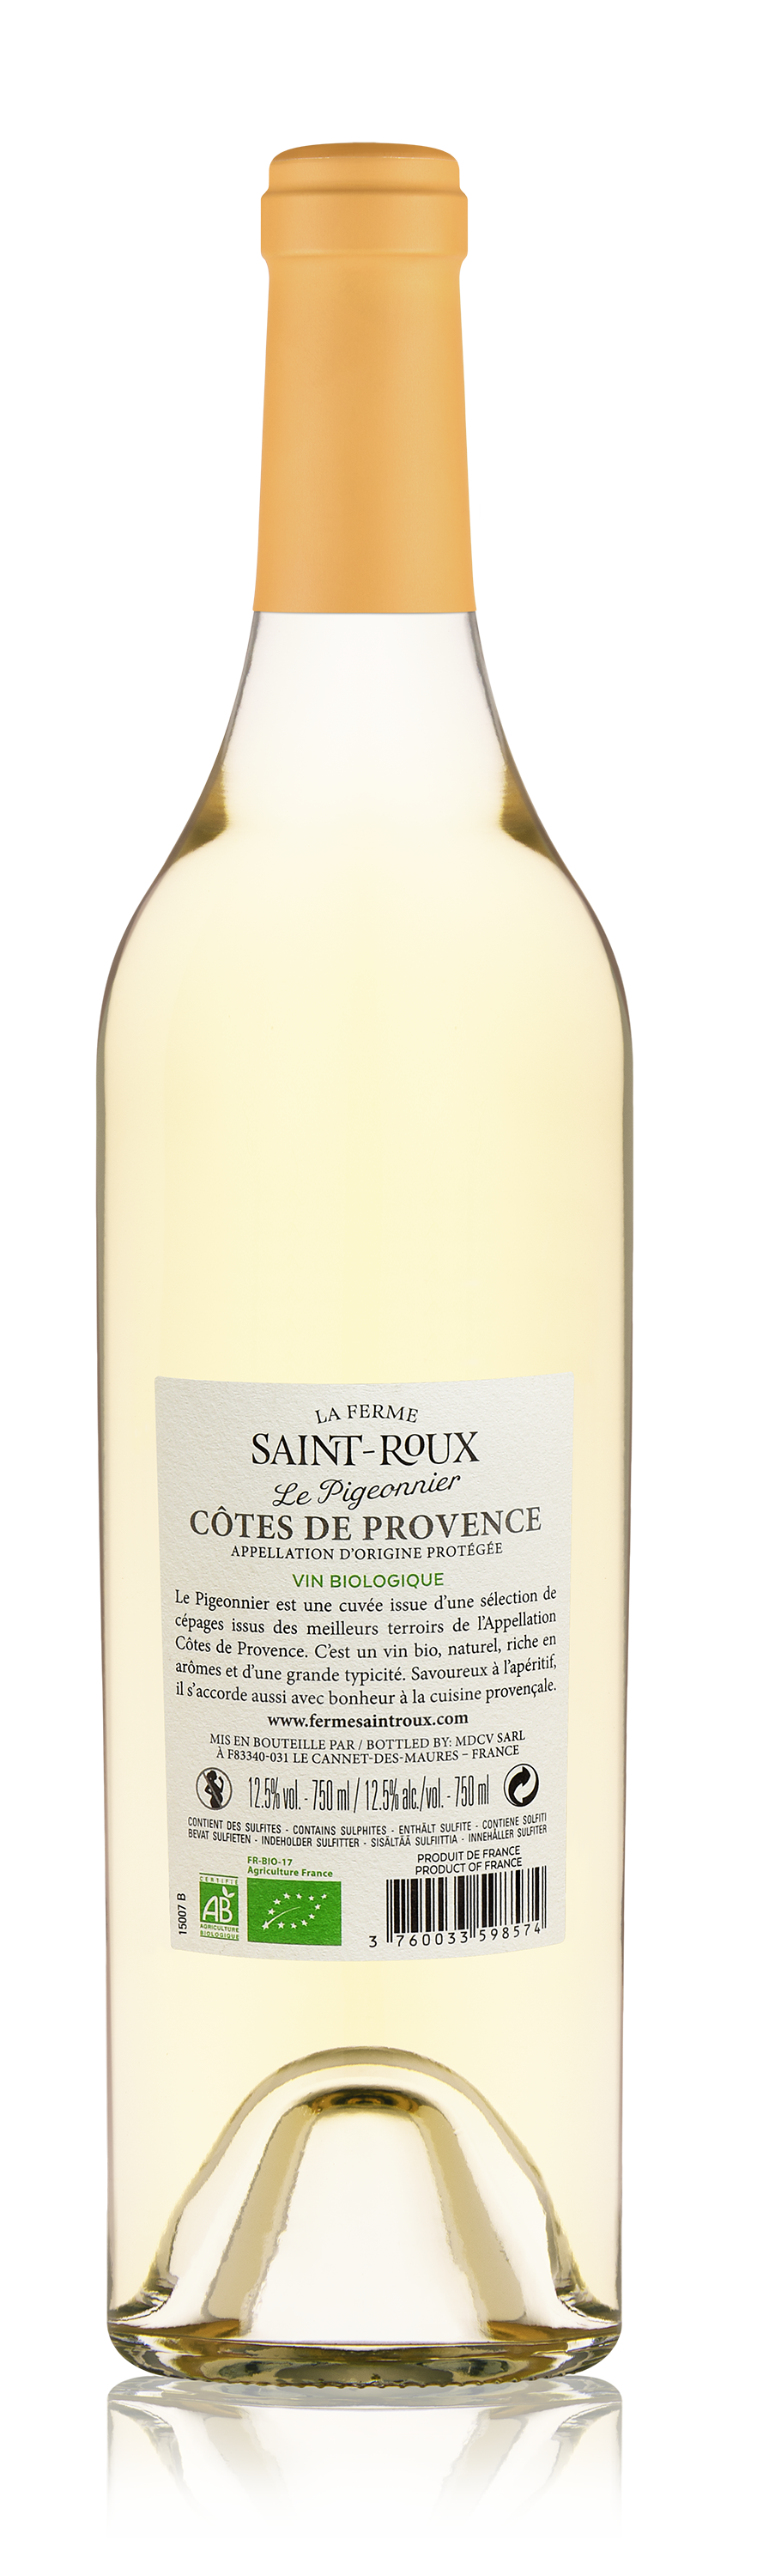 Blanc AOP Côtes-de-Provence - étiquette